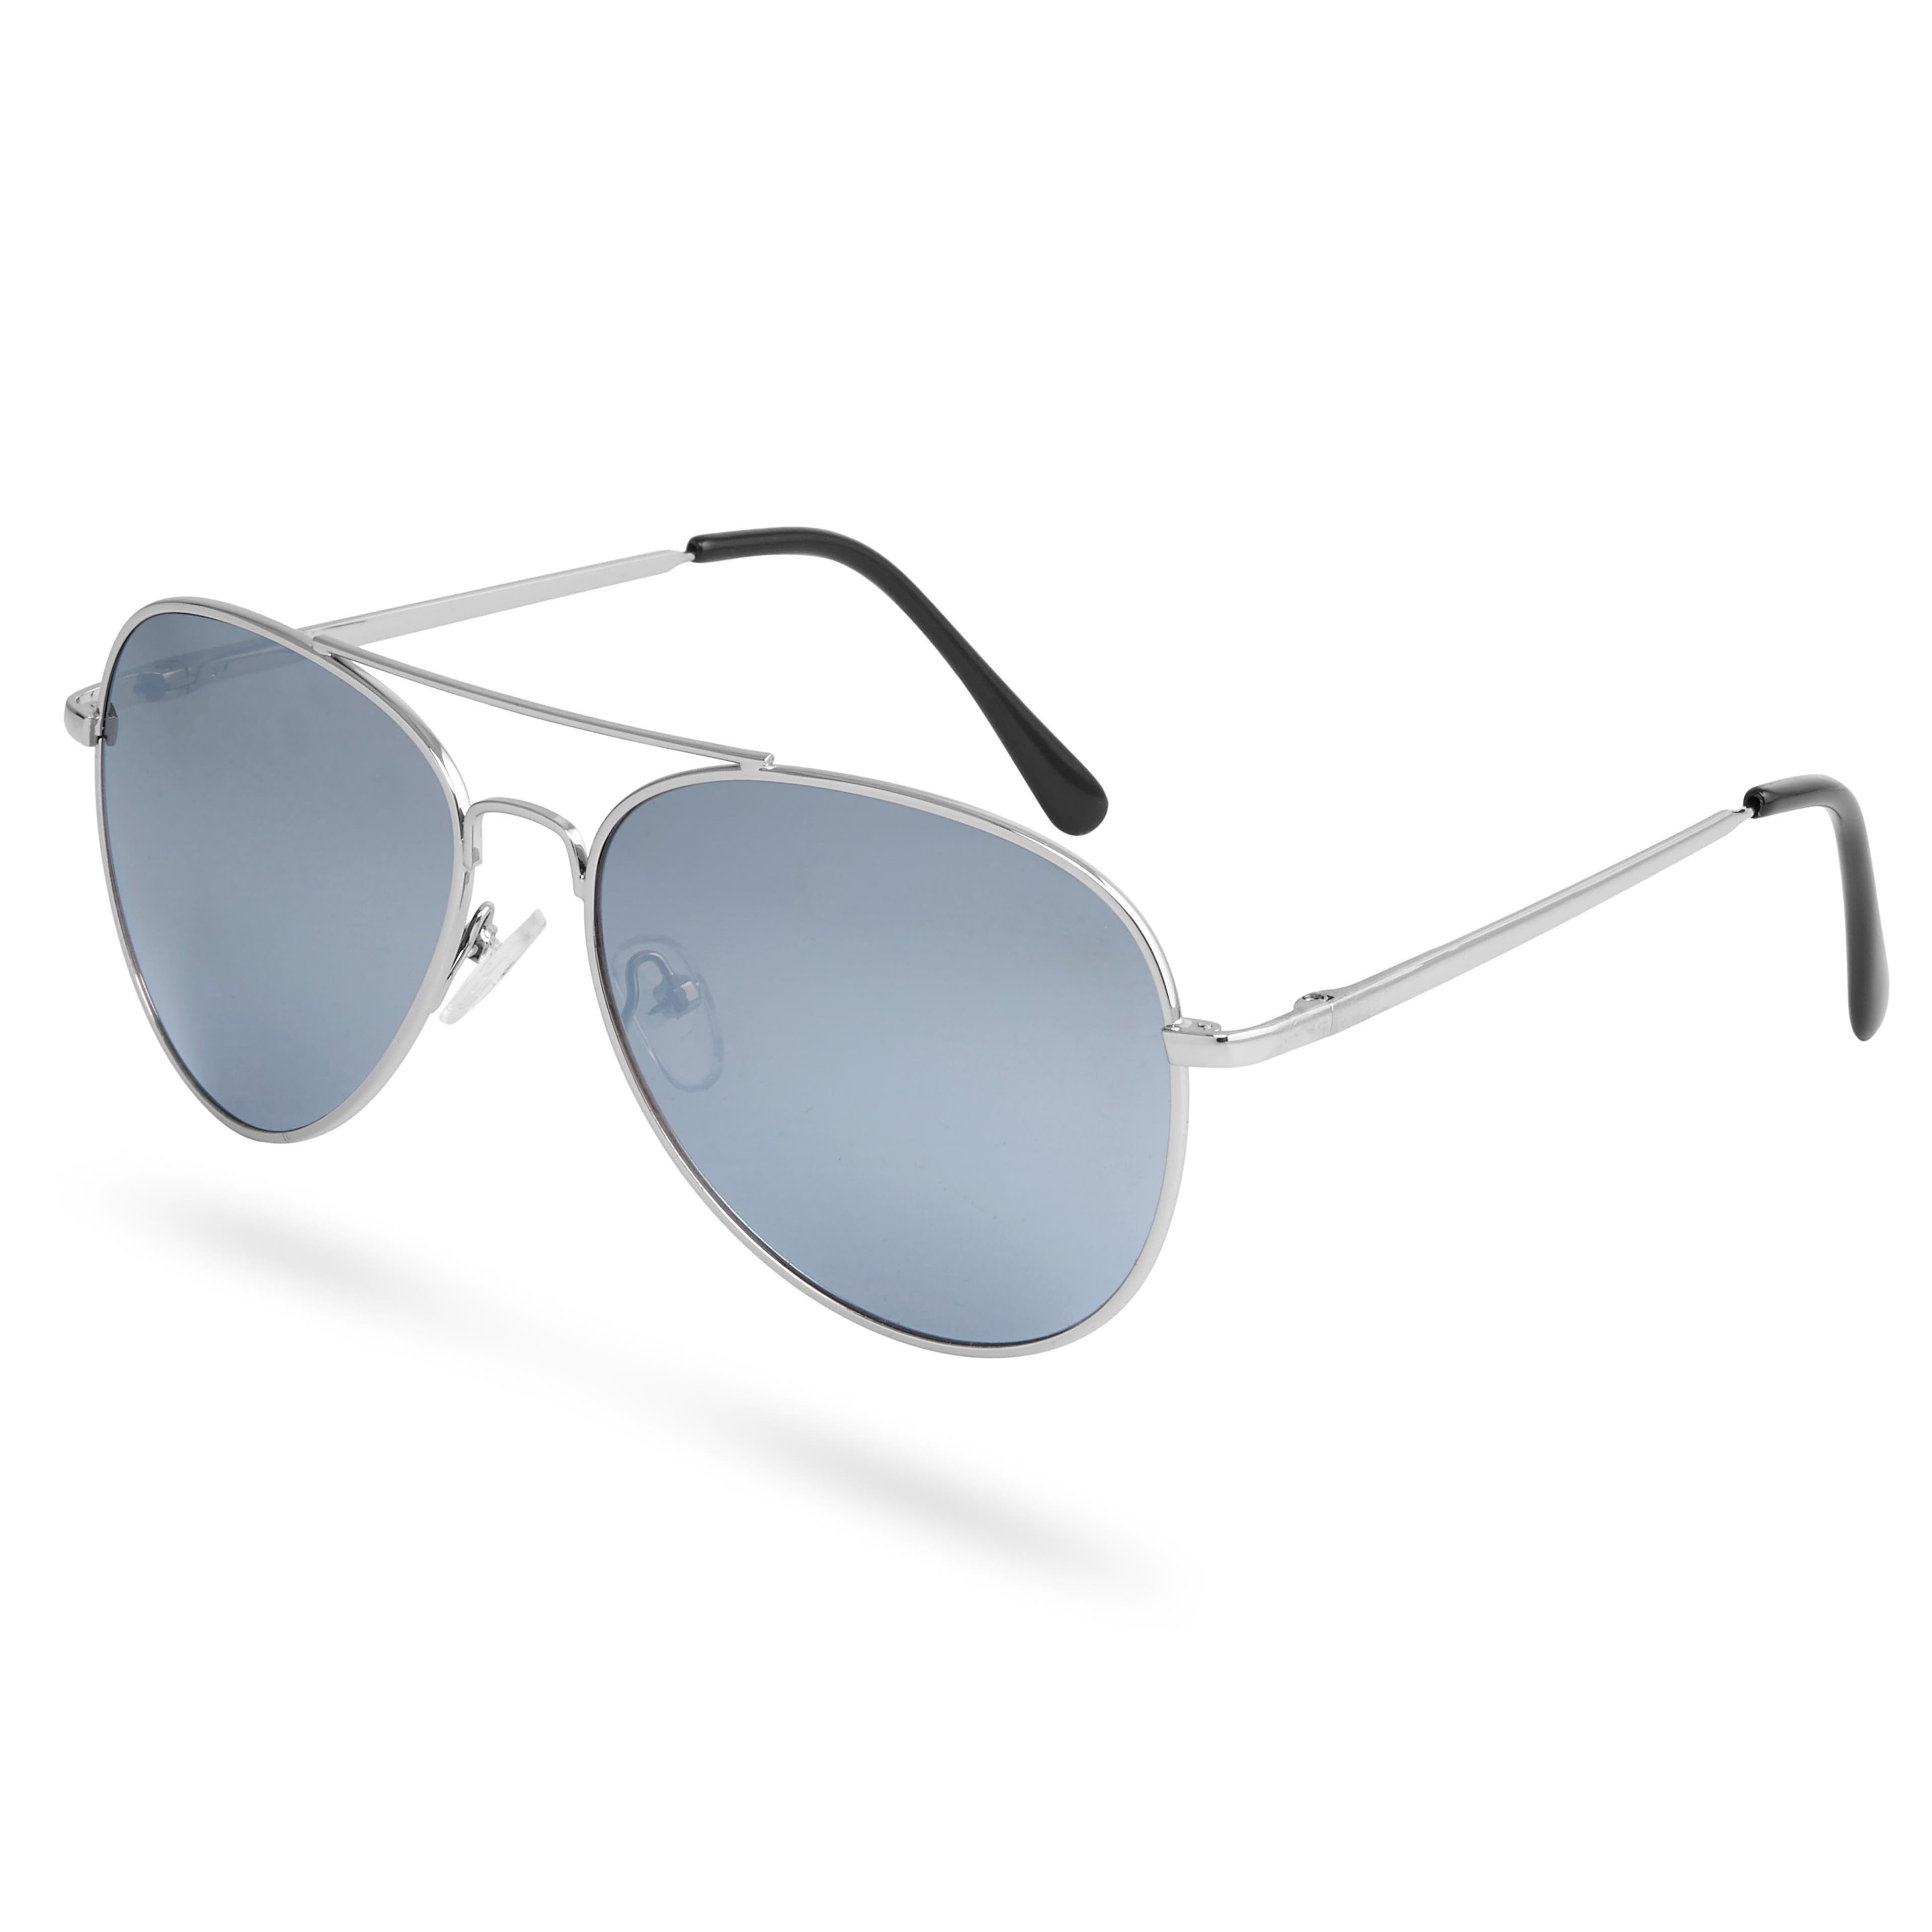 Aviator Silver-Tone Mirrored Sunglasses